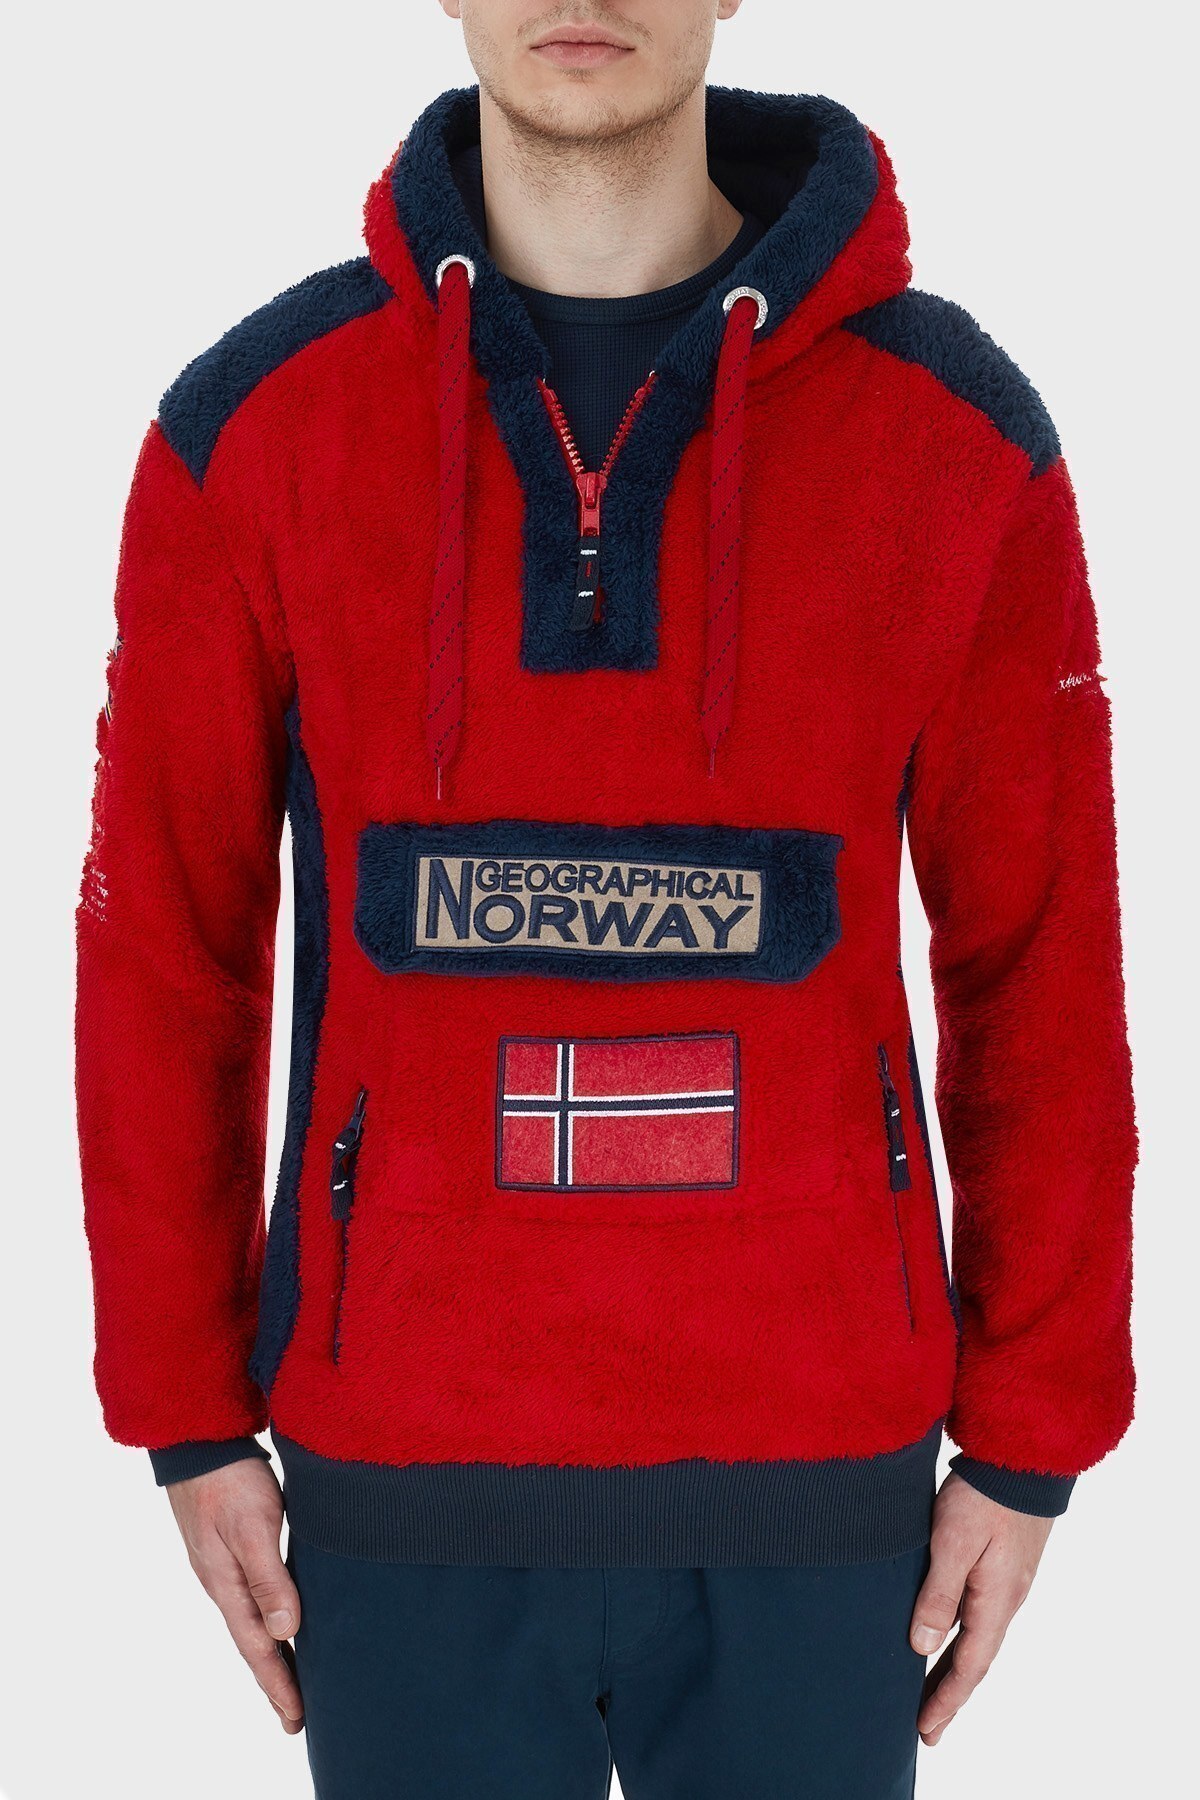 Norway Geographical Kapüşonlu Yarım Fermuarlı Outdoor Polar Erkek Sweat GYMCLASSSHERCO KIRMIZI